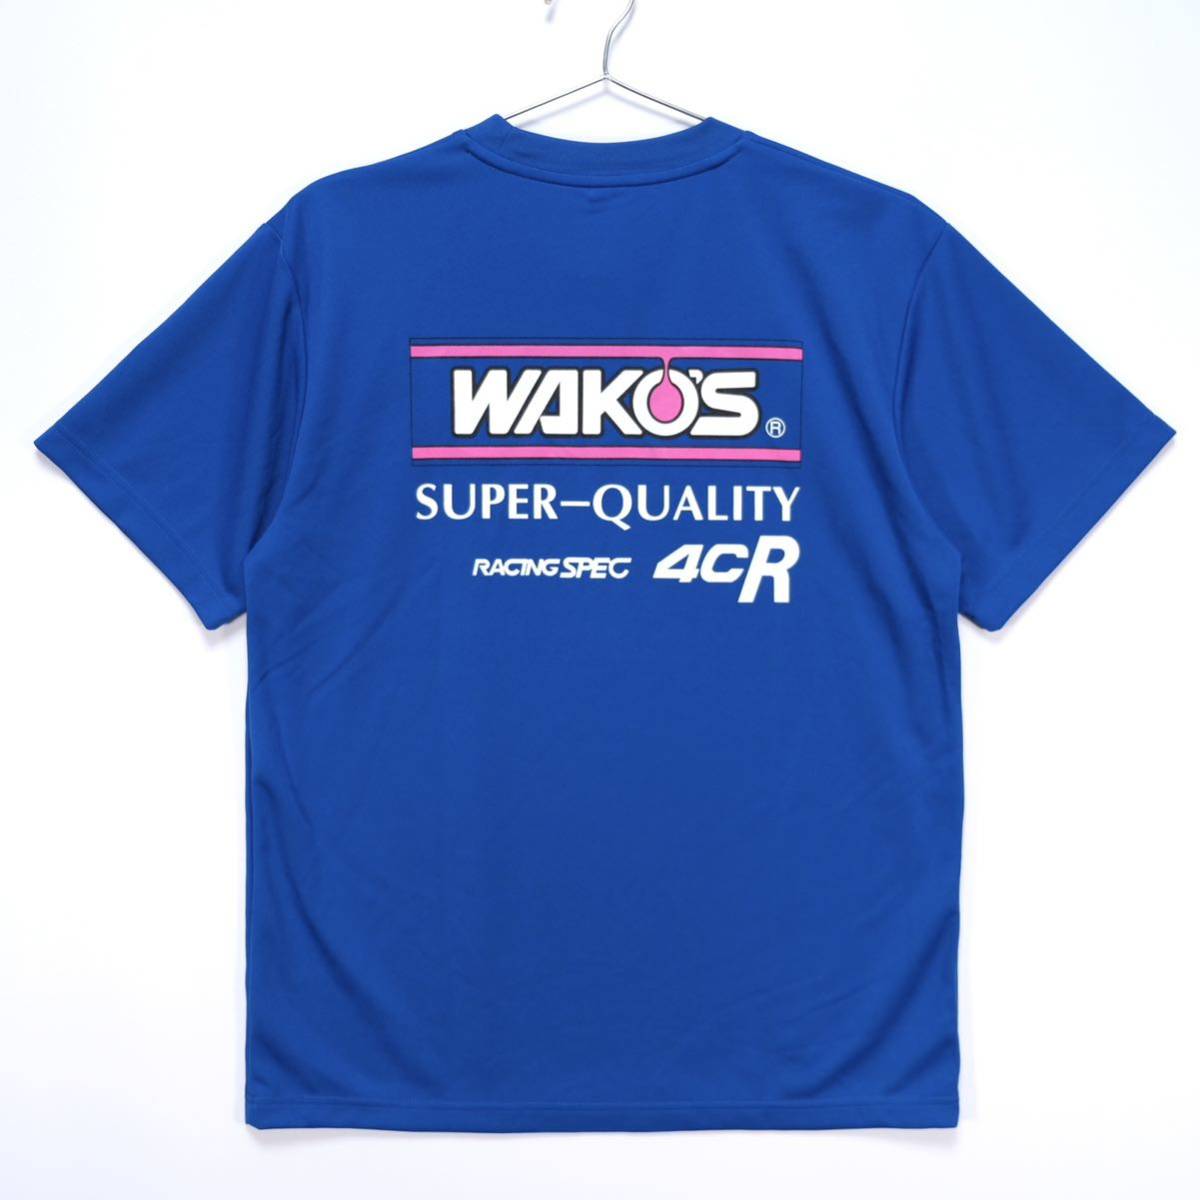 【送料無料】WAKO'S(ワコーズ)/ドライTシャツ/SUPER QUALITY RACING SPEC 4CR/吸汗速乾素材/ブルー/Lサイズ